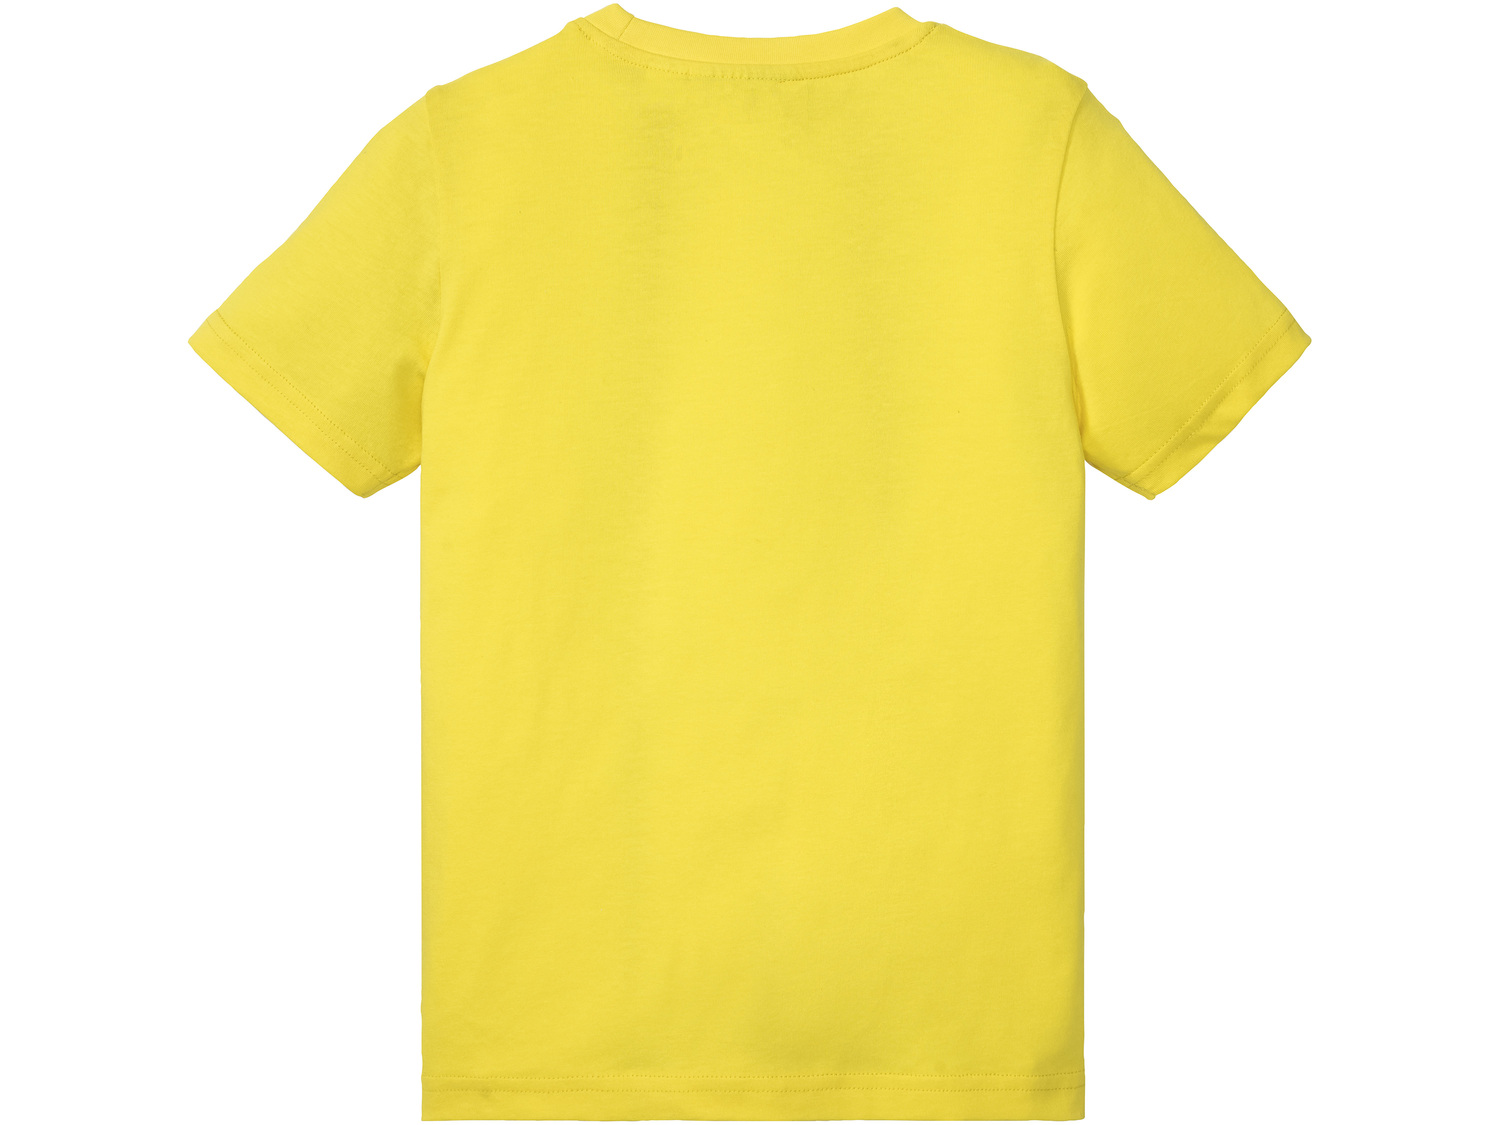 T-shirt dziecięcy , cena 12,99 PLN 
- rozmiary: 98-140
- 100% bawełny
Dostępne ...